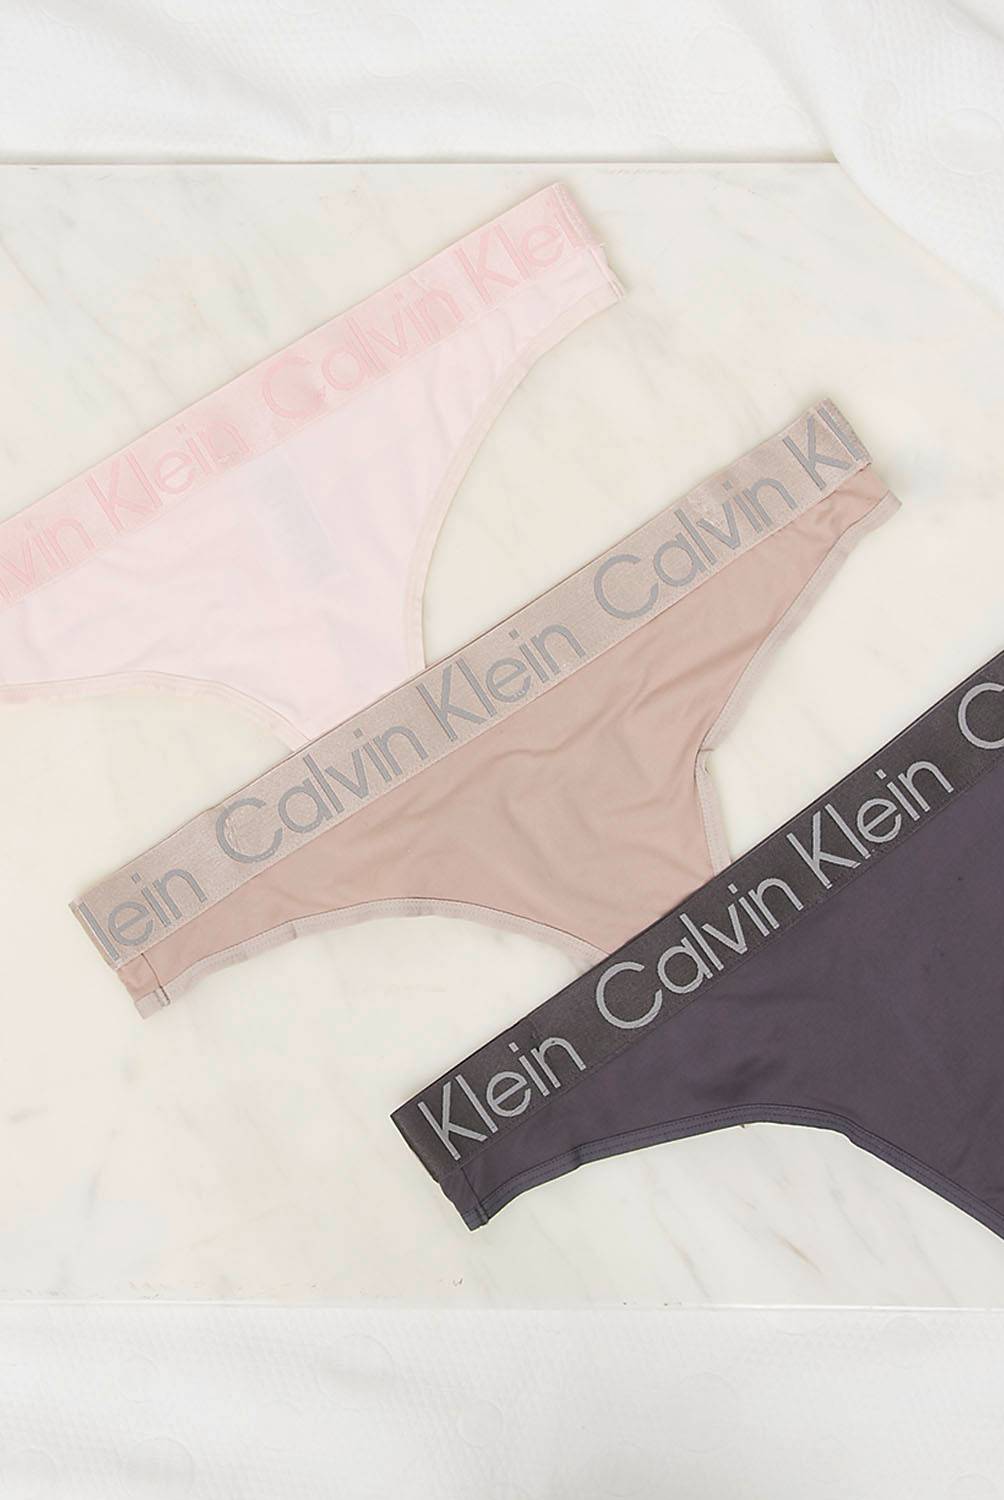 CALVIN KLEIN - Pack de 3 Calzón Mujer